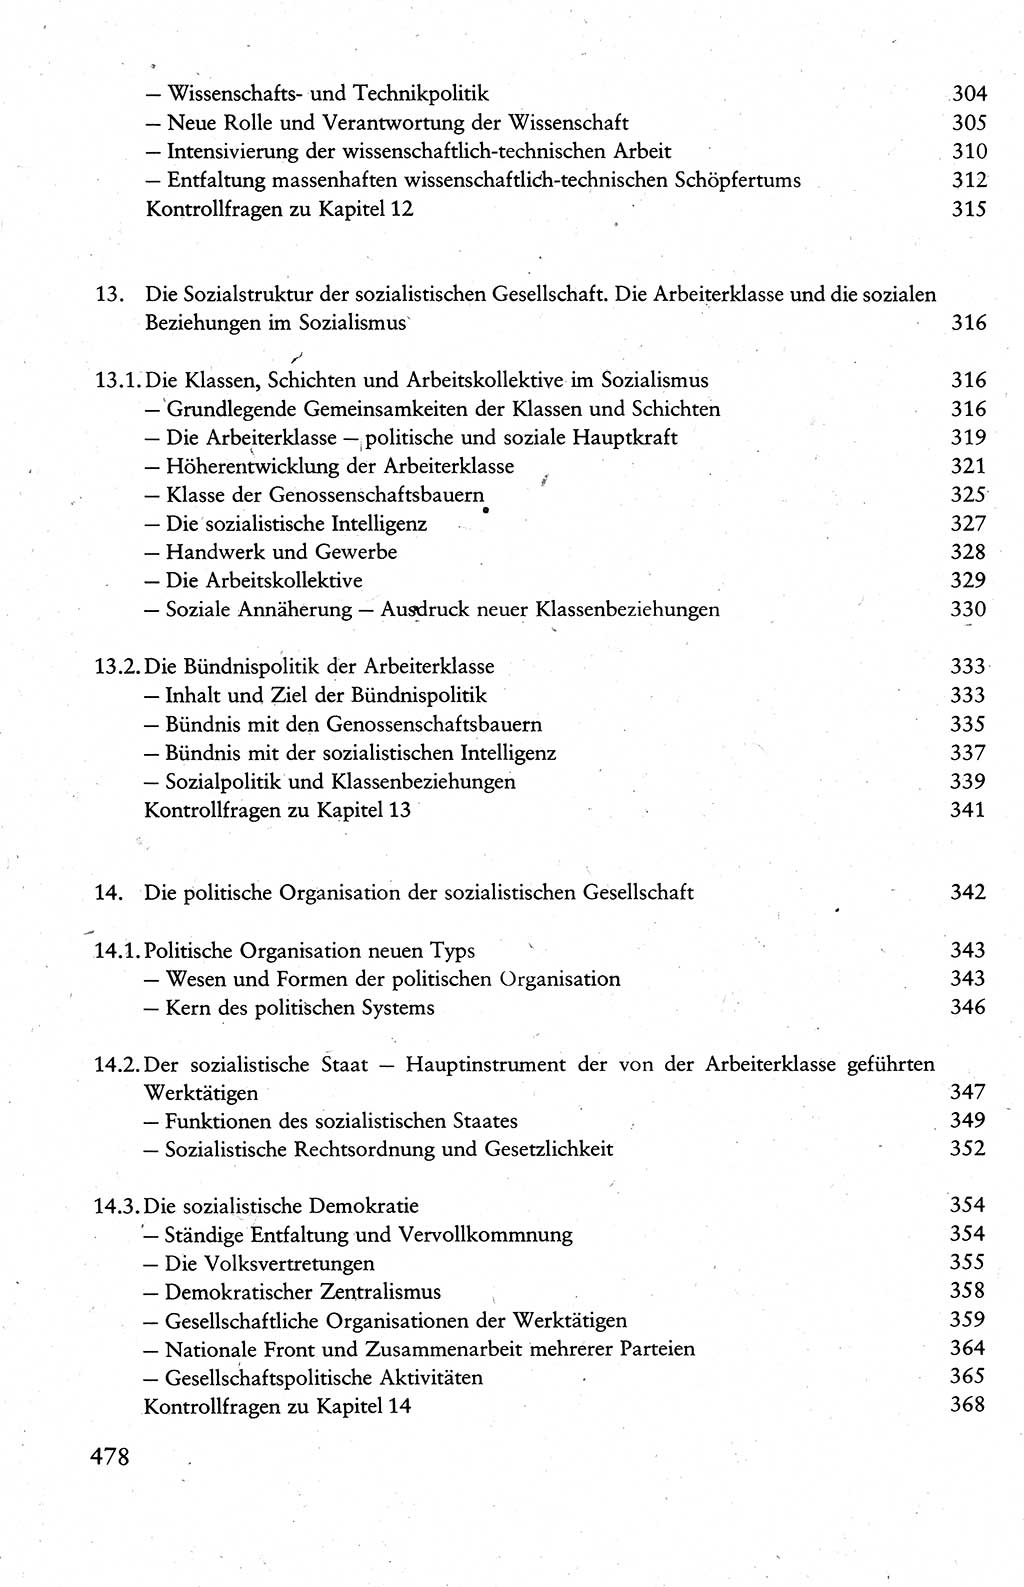 Wissenschaftlicher Kommunismus [Deutsche Demokratische Republik (DDR)], Lehrbuch für das marxistisch-leninistische Grundlagenstudium 1983, Seite 478 (Wiss. Komm. DDR Lb. 1983, S. 478)